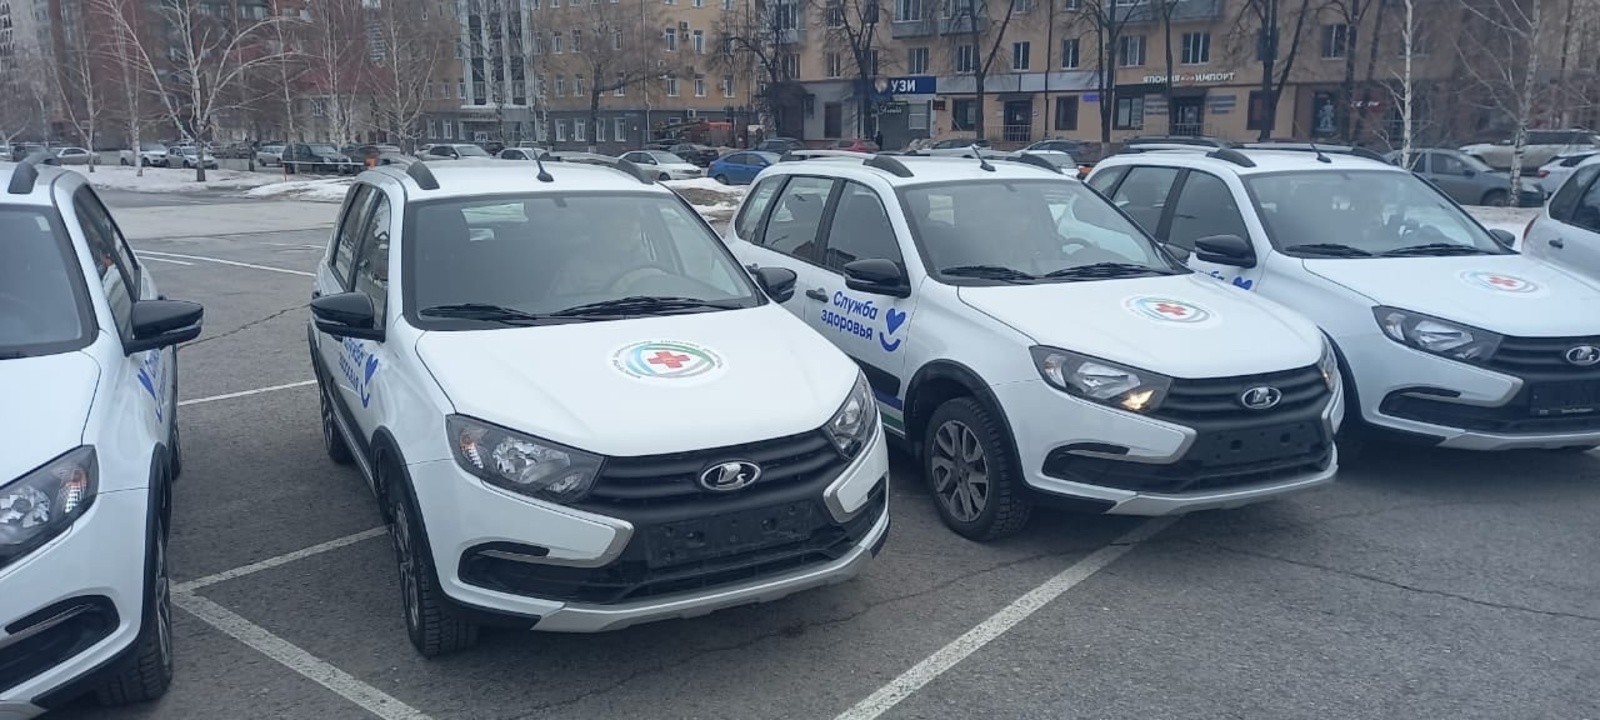 Месягутовская ЦРБ получила новые автомобили